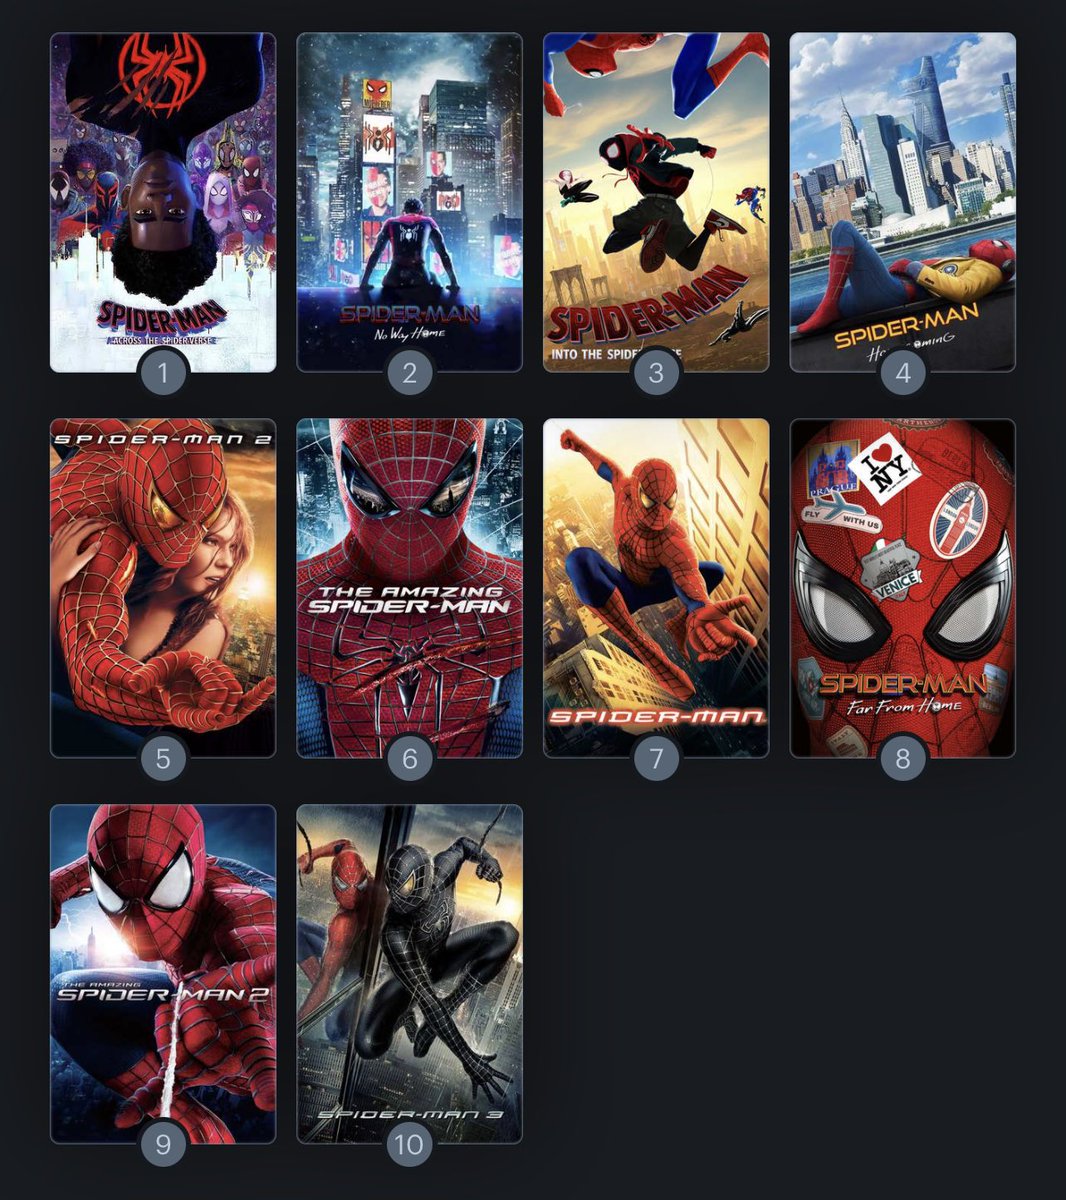 Ranking my favorite #SpiderMan Films

1) #AcrossTheSpiderVerse
2) #SpiderManNoWayHome
3) #IntoTheSpiderVerse
4) #SpiderManHomecoming
5) #SpiderMan2

6) #AmazingSpiderMan
7) #SpiderMan
8) #SpiderManFarFromHome
9) #AmazingSpiderMan2
10) #SpiderMan3